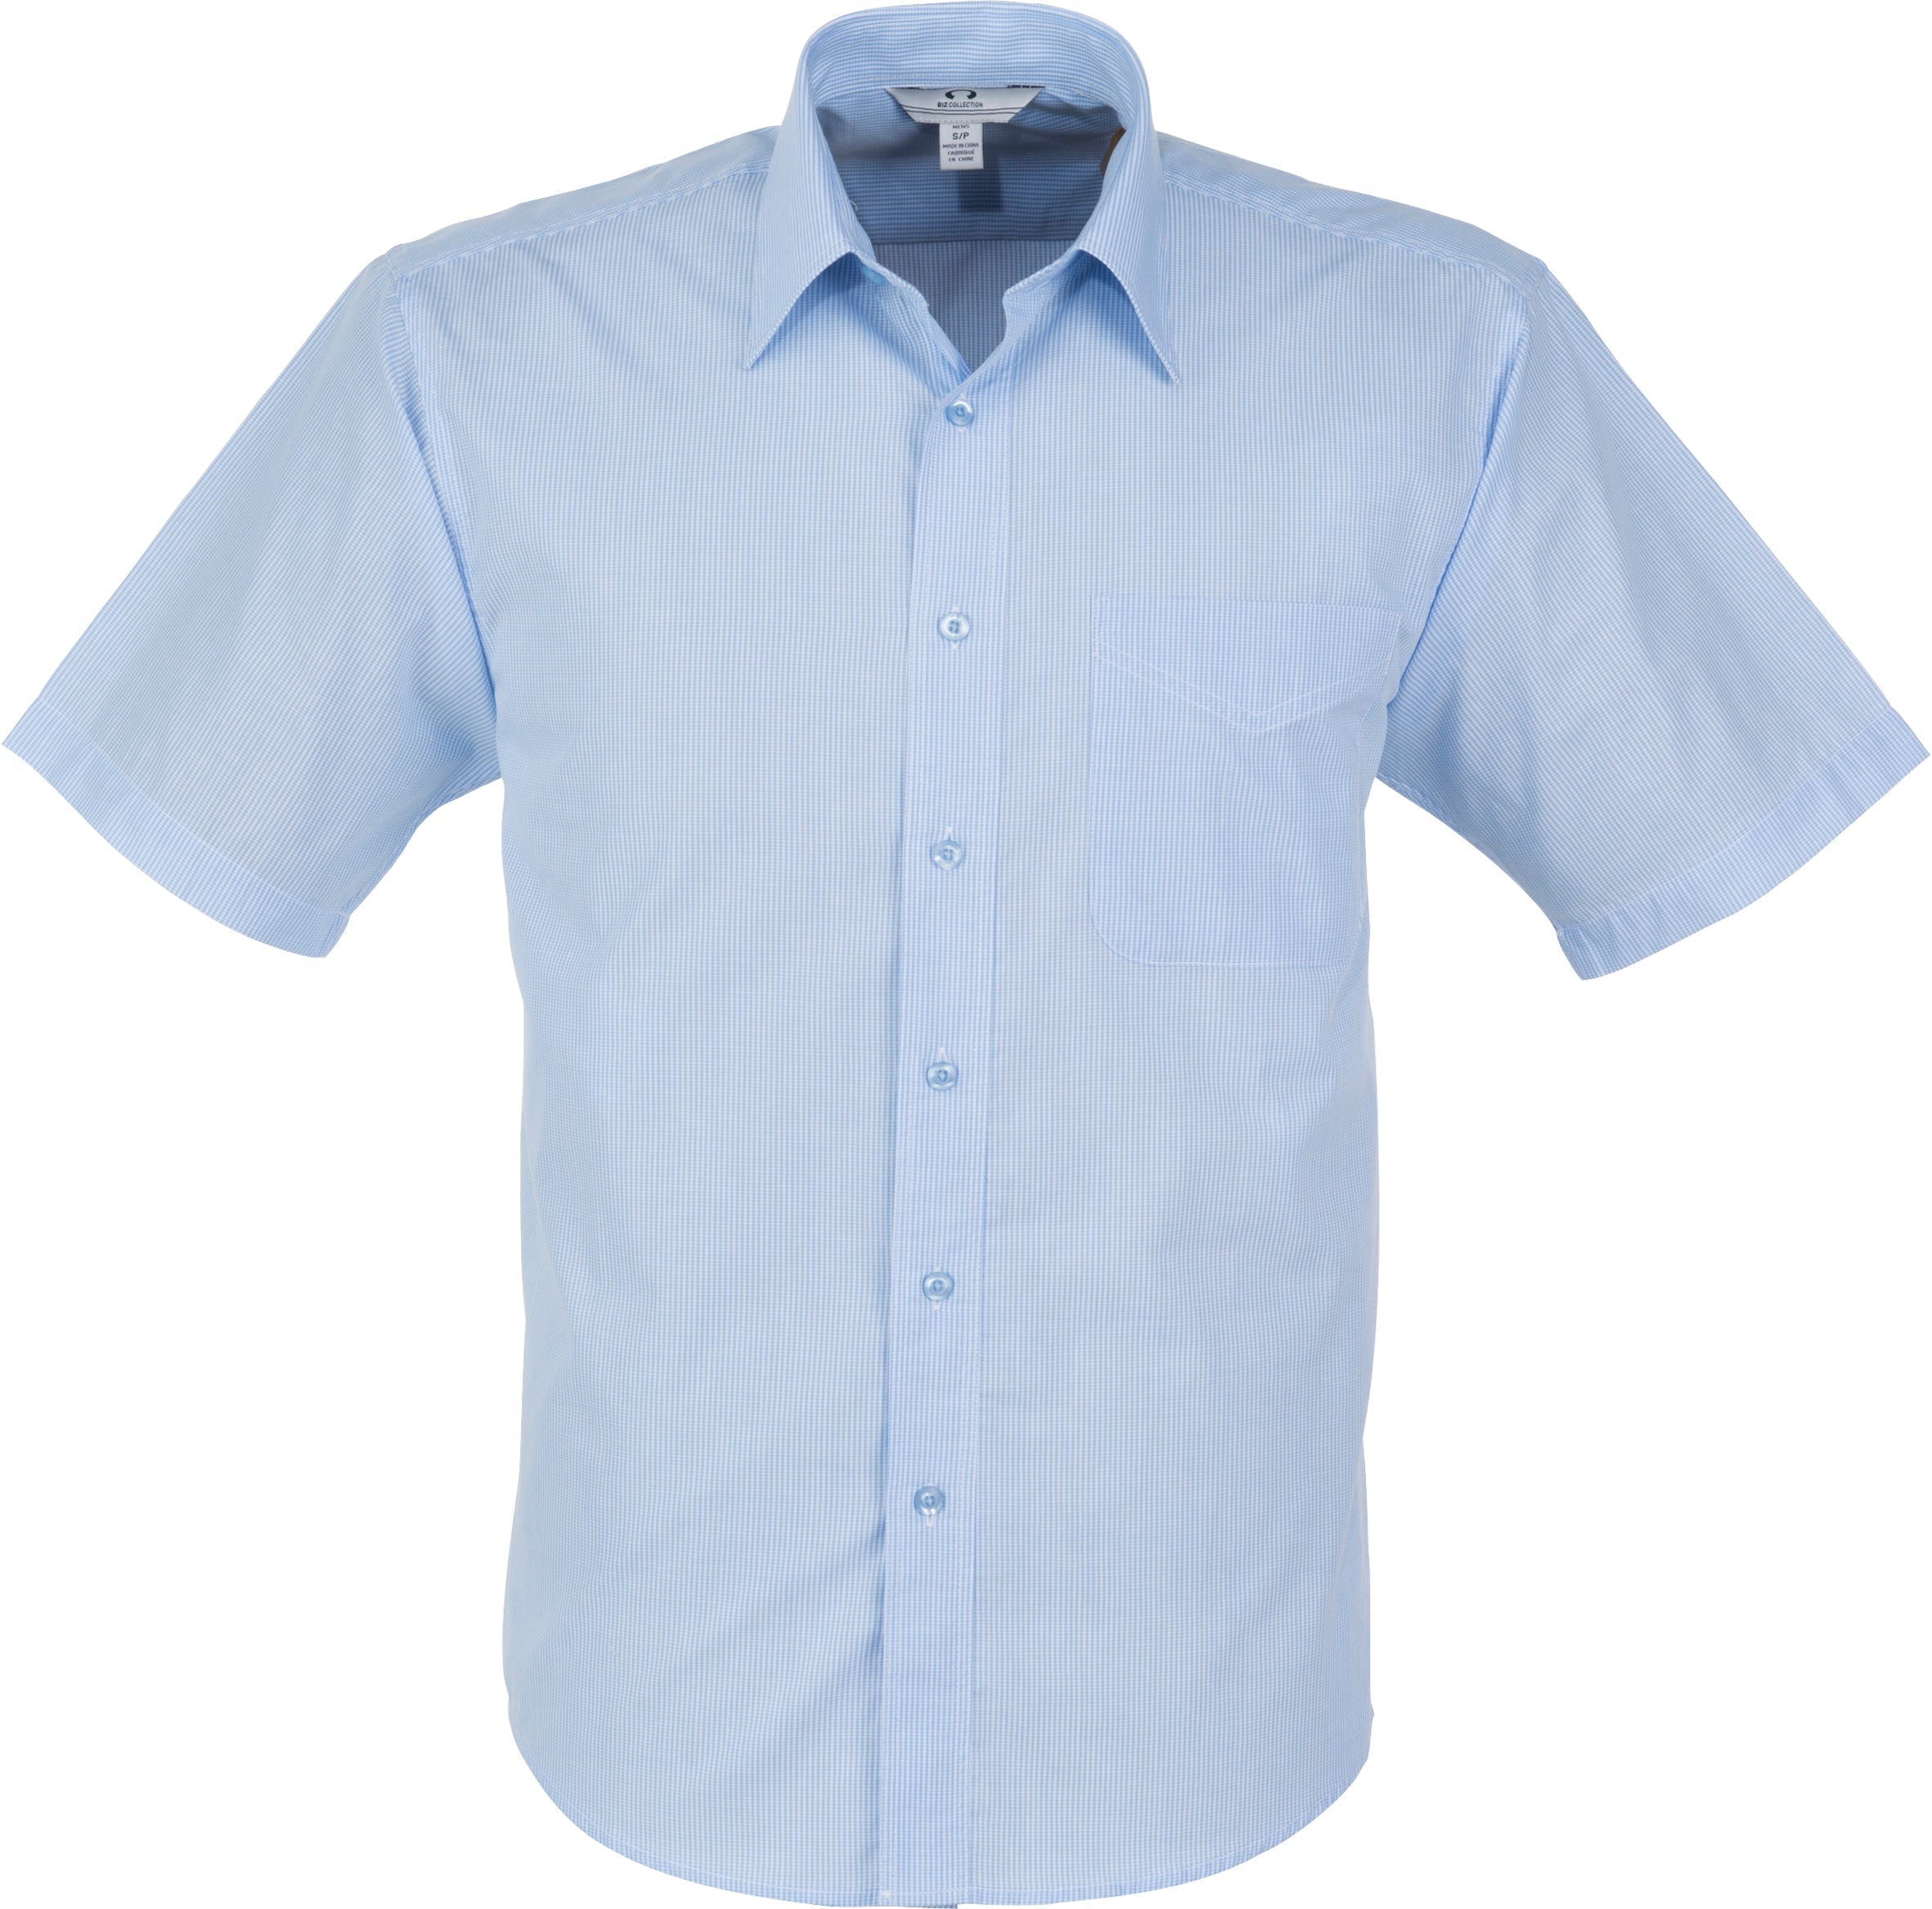 Mens Short Sleeve Micro Check Shirt-2XL-Light Blue-LB